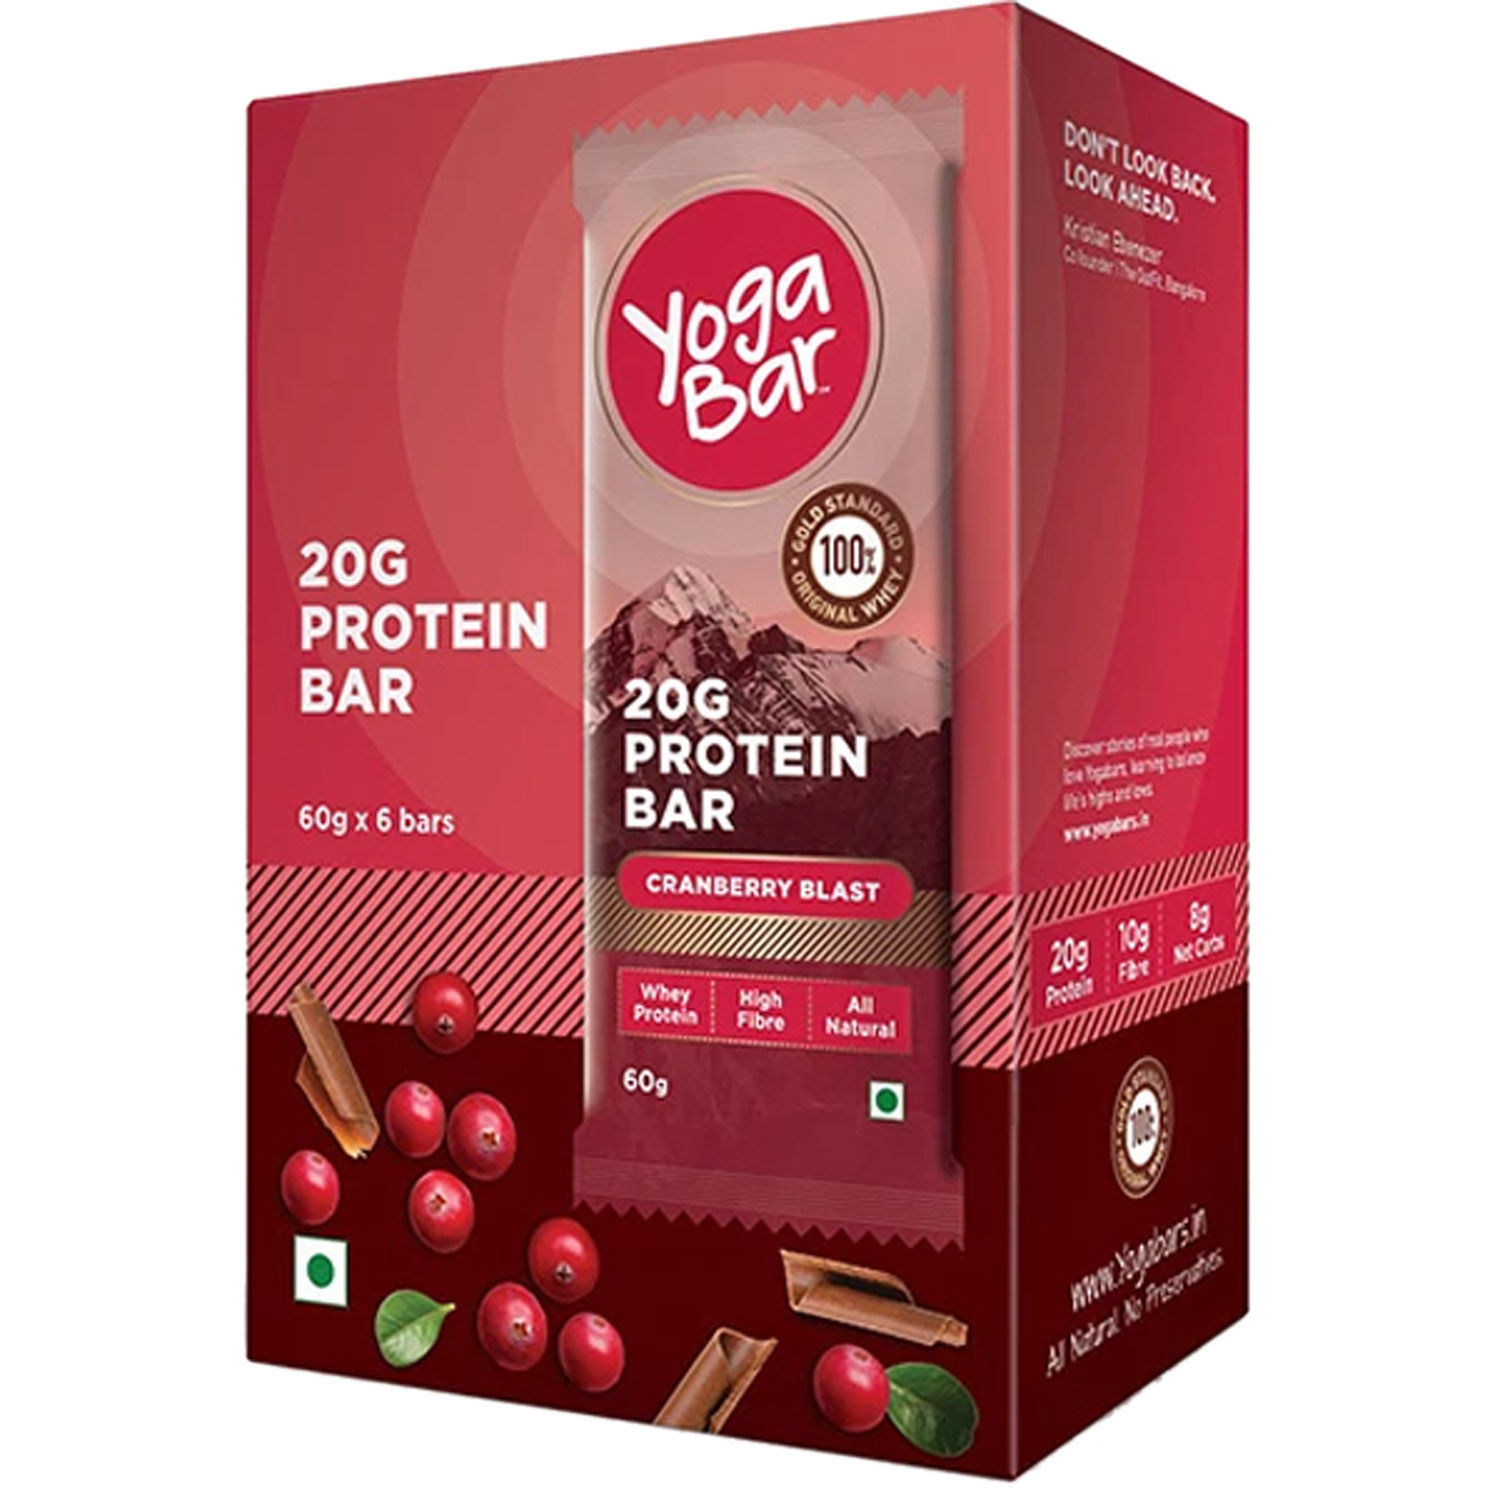 Buy Yoga Bar Cranberry Blast 20 gm Protein Bar, 60 gm Online